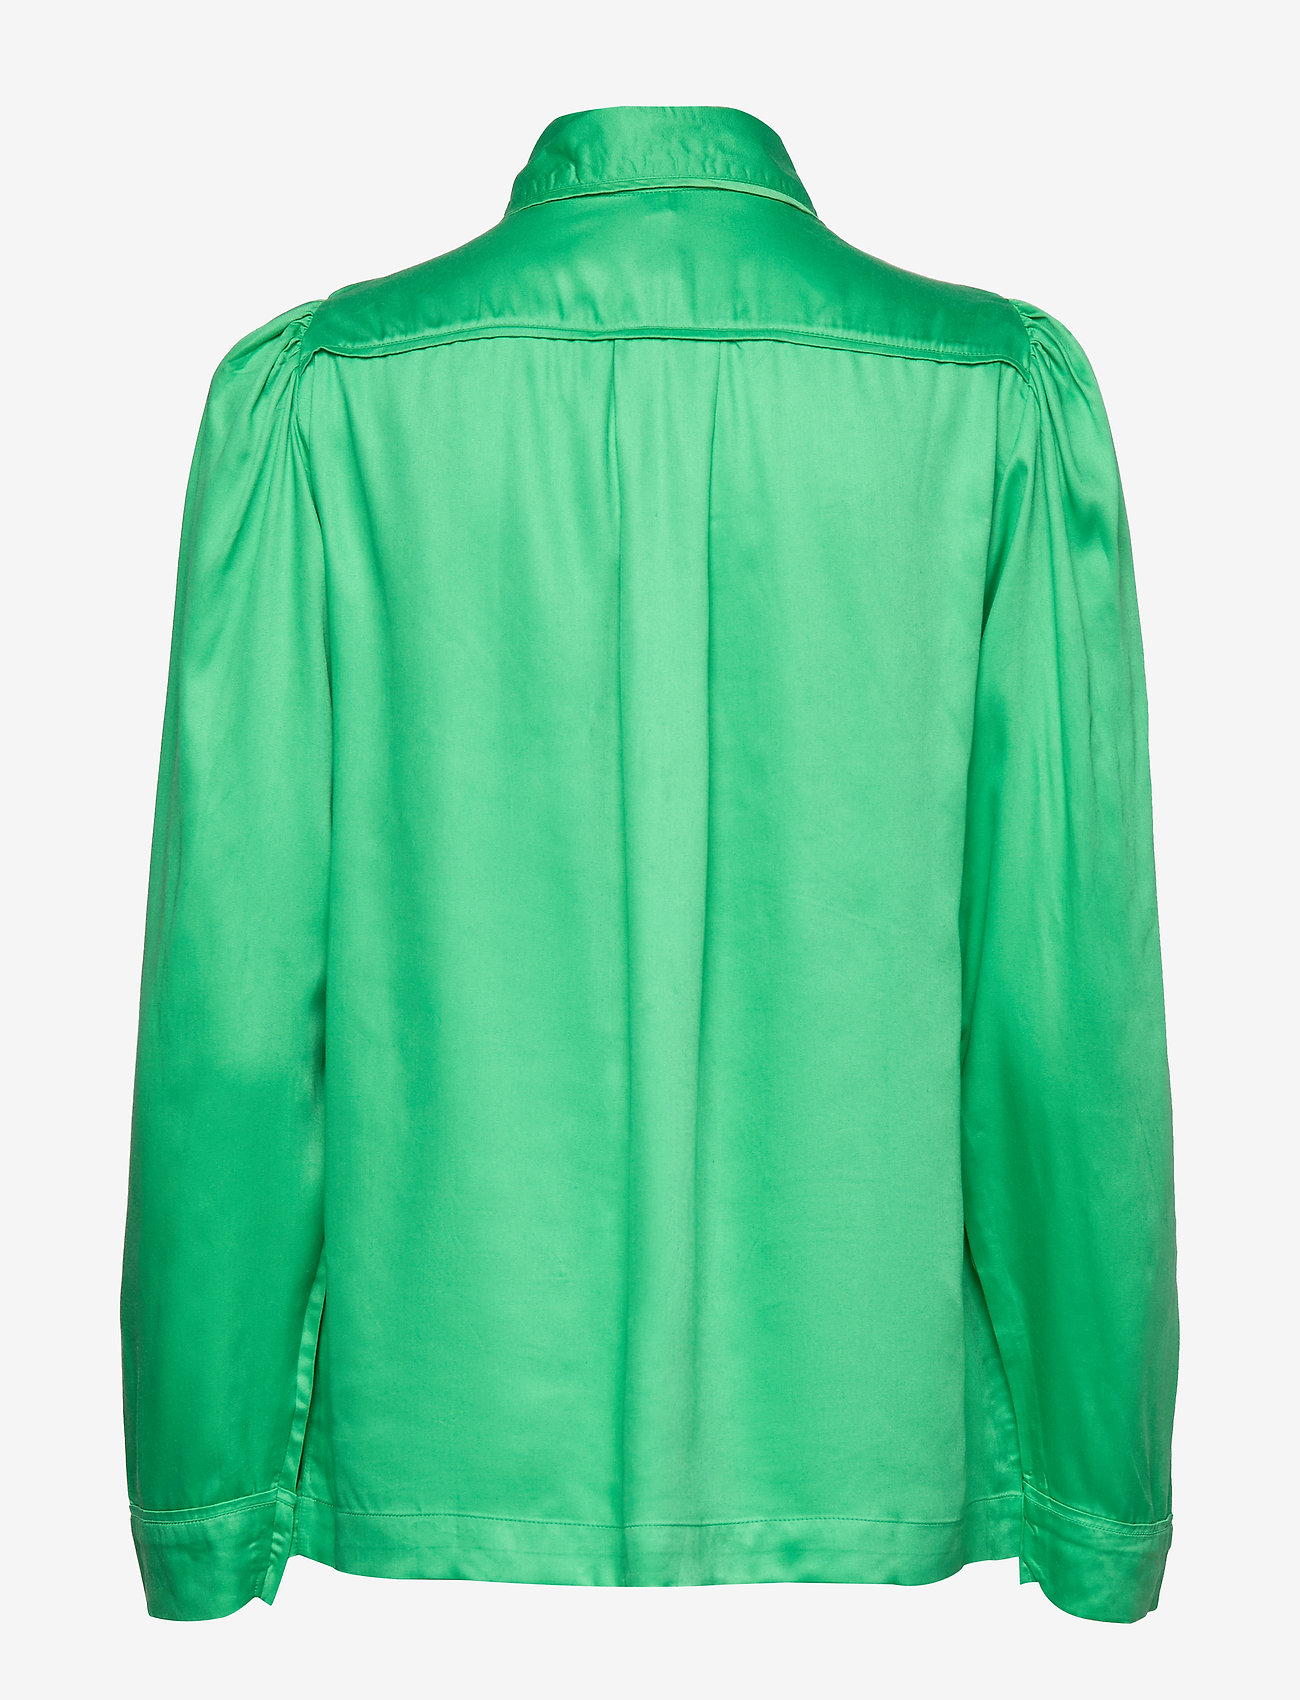 Underprotection - Rana shirt - naised - green - 1